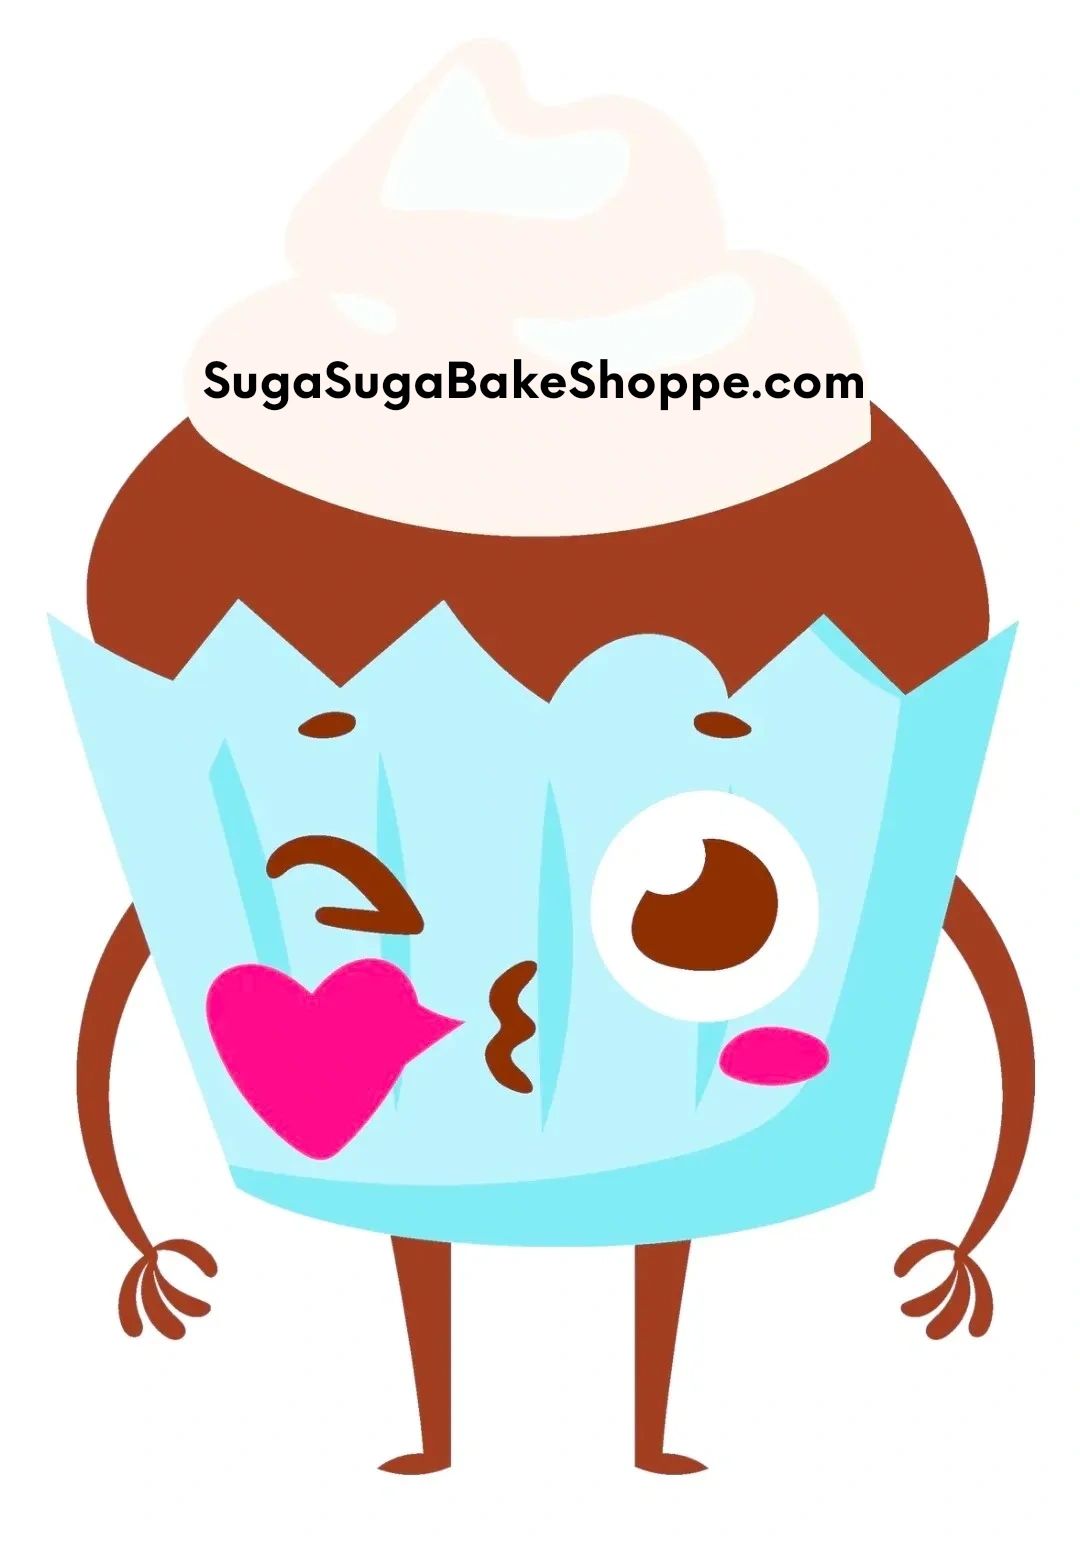 Suga Suga BakeShoppe.com
